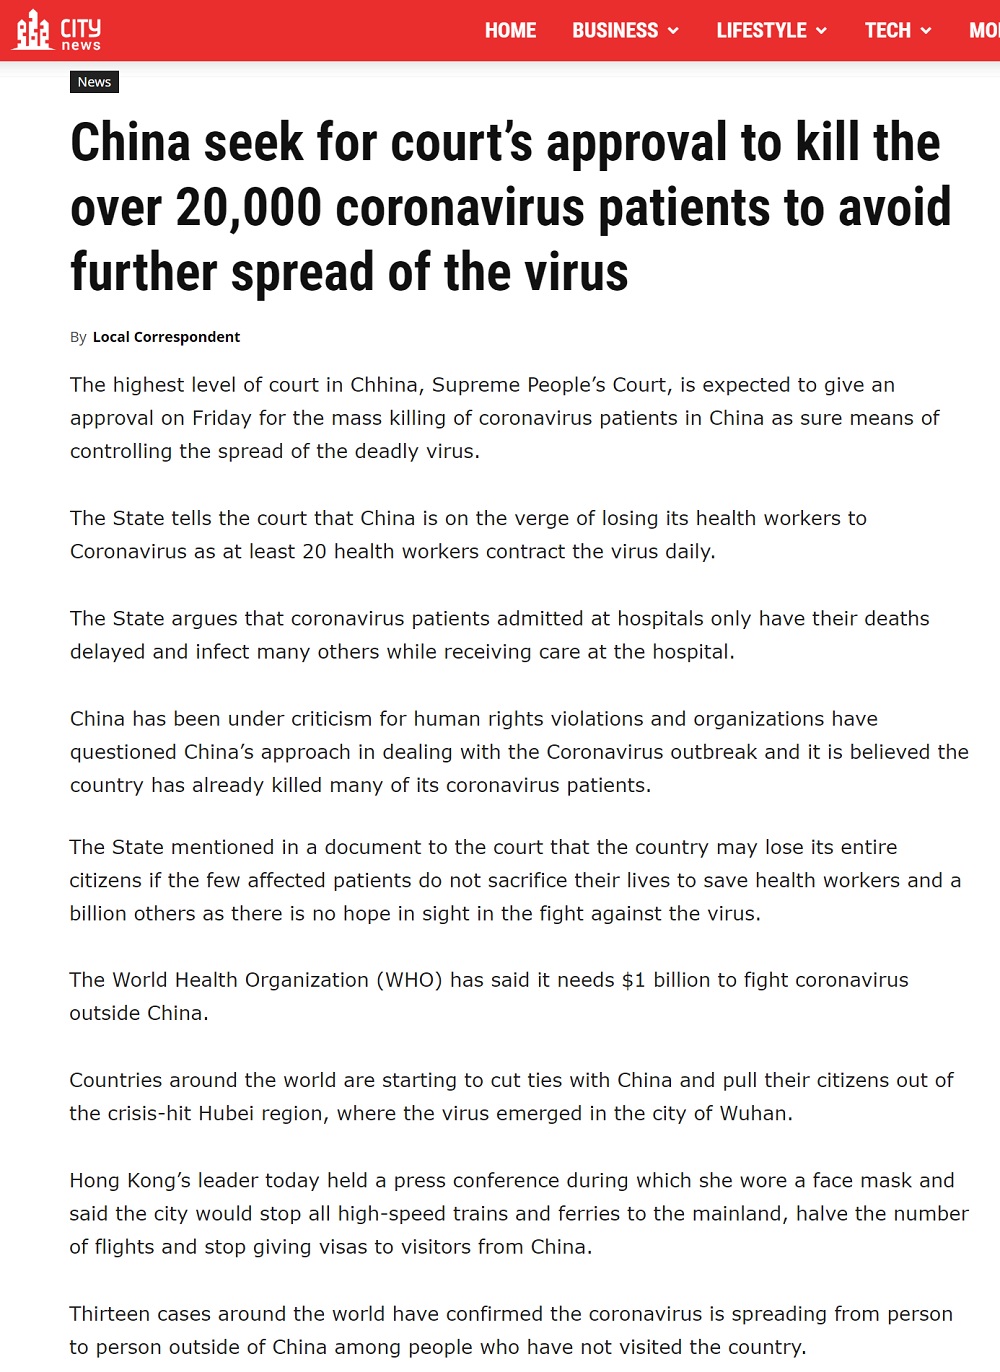 İddianın kaynağı olan "AB-TC City News" adlı adlı internet sitesinde 5 Şubat 2020'de yayınlanan "Çin, virüsün daha fazla yayılmasını önlemek için mahkemeden 20.000'den fazla koronavirüs hastasını öldürme onayı istiyor" başlıklı yazı